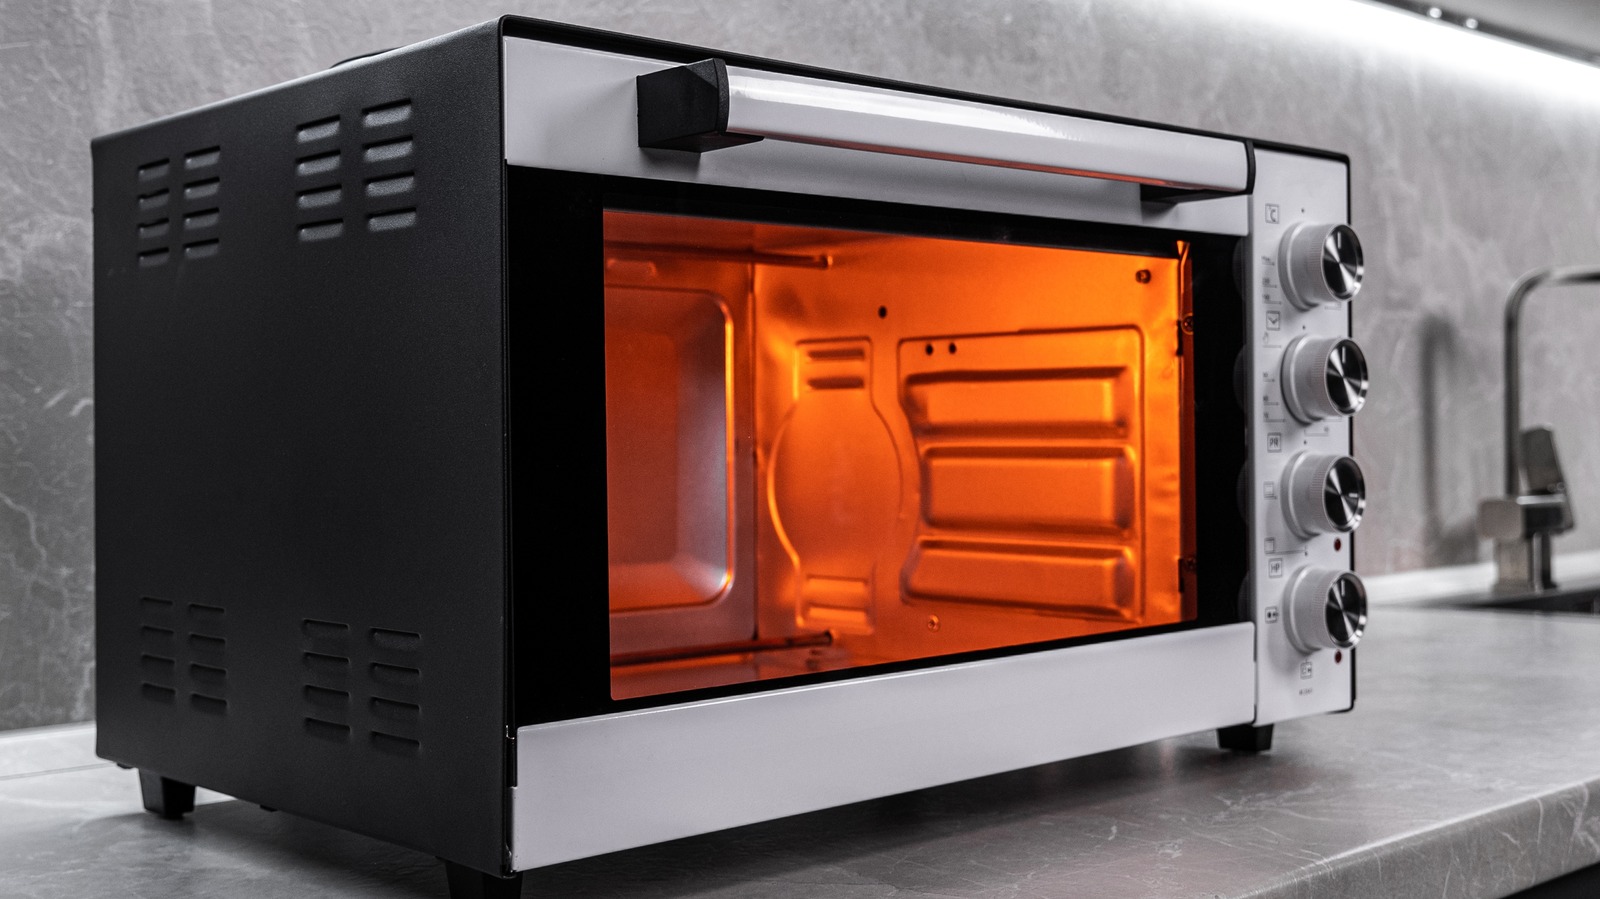 Save $100 on Ninja's Versatile 10-in-1 Foodi XL Pro Toaster Oven